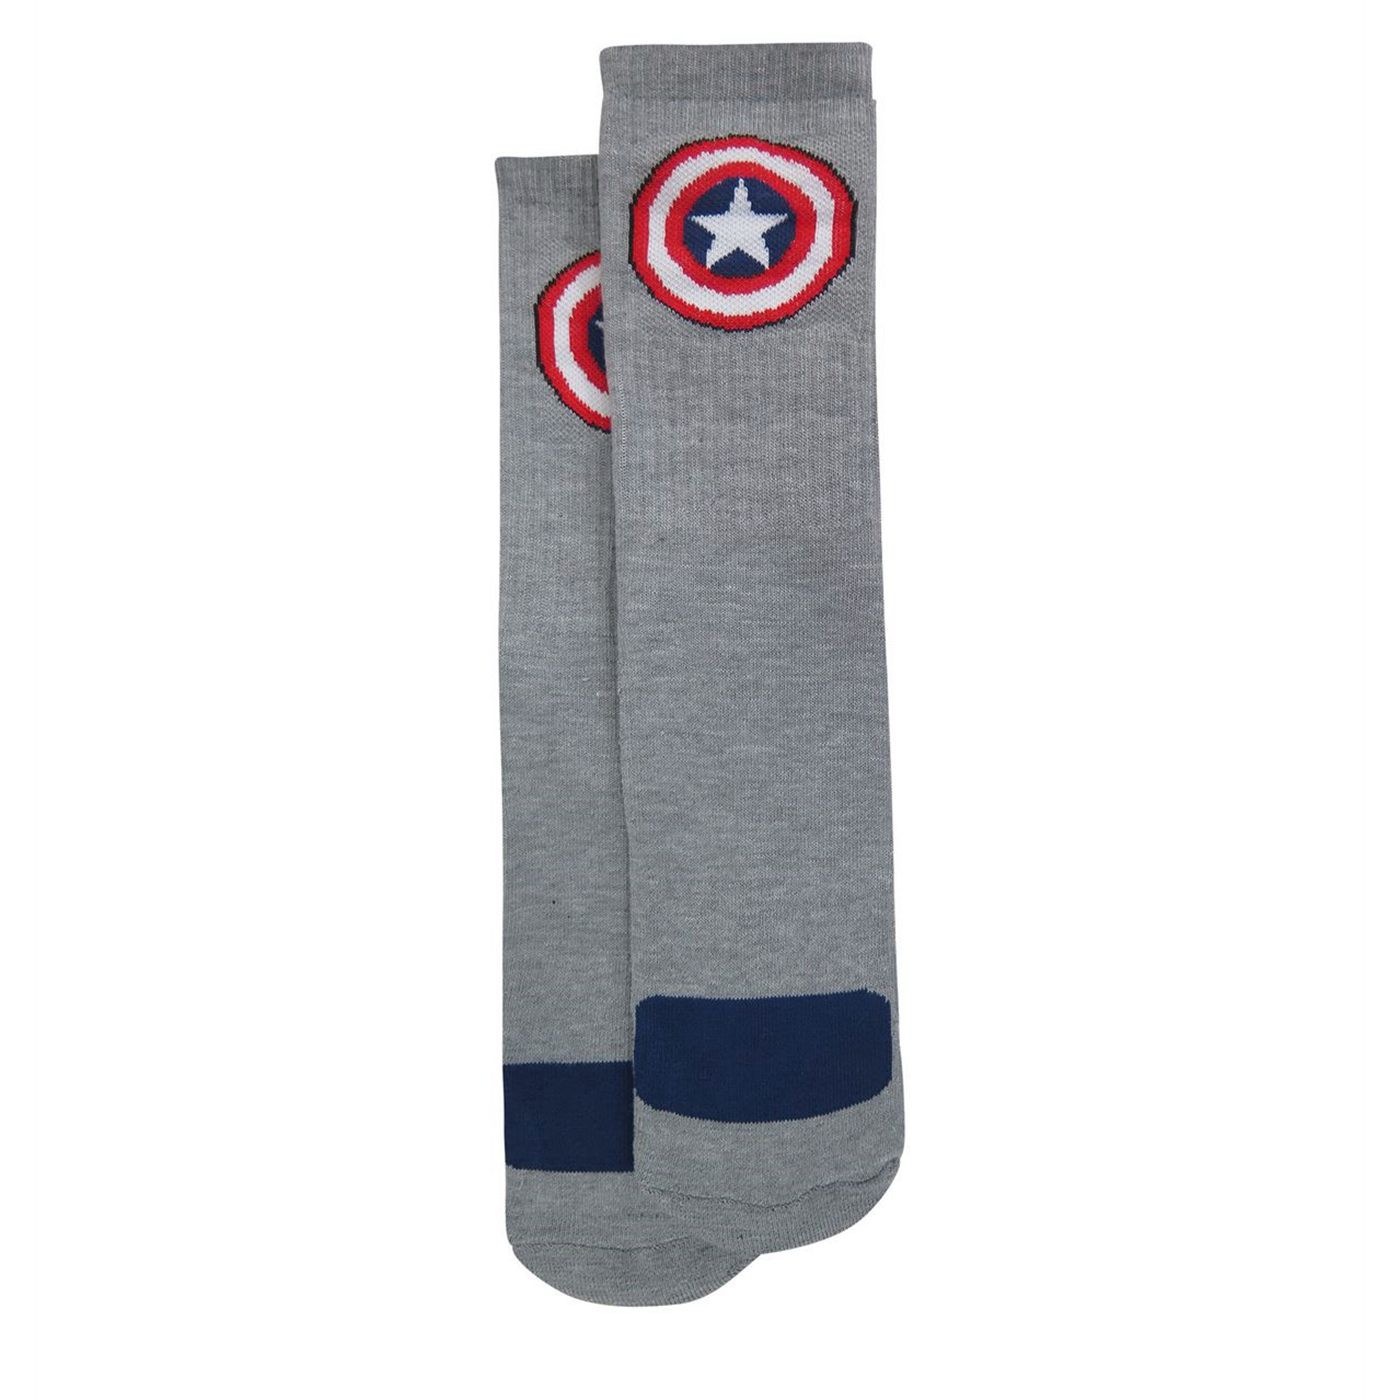 Captain America Vibranium Weave Crew Socks 2-Pack